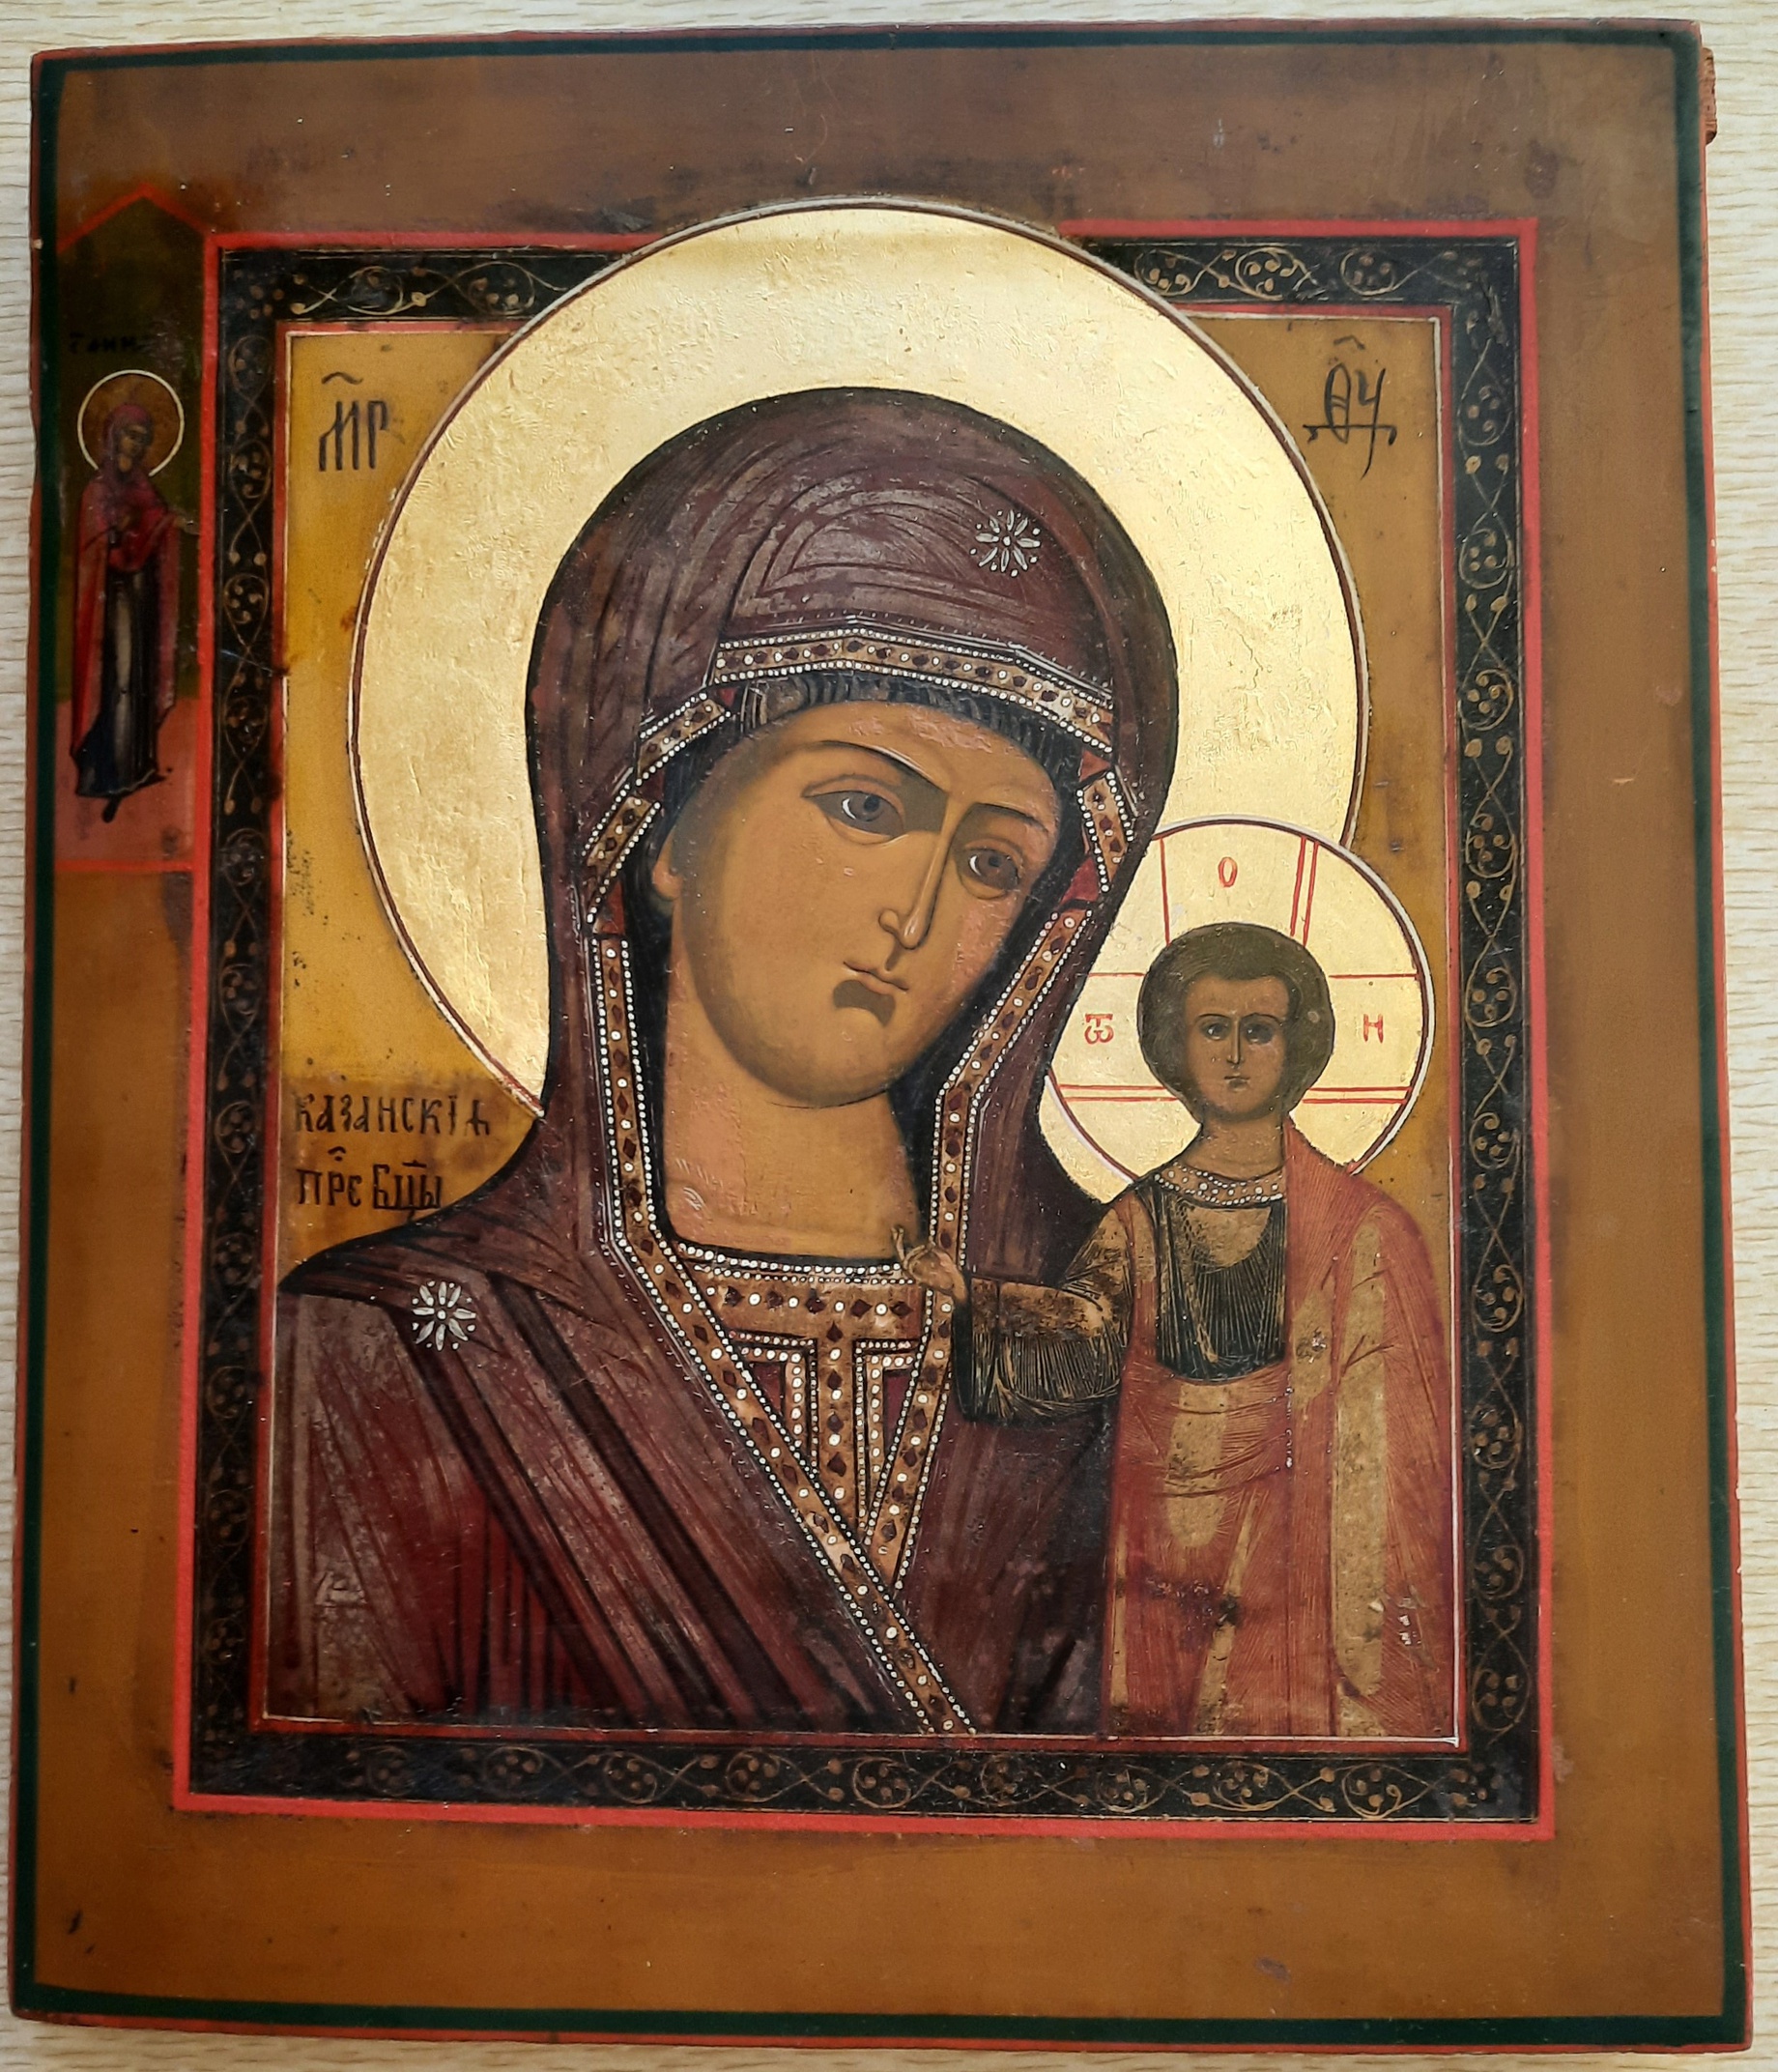 Антикварная старинная икона Казанская Пресвятая Богородица - ковчег, письмо, аналой 19 век